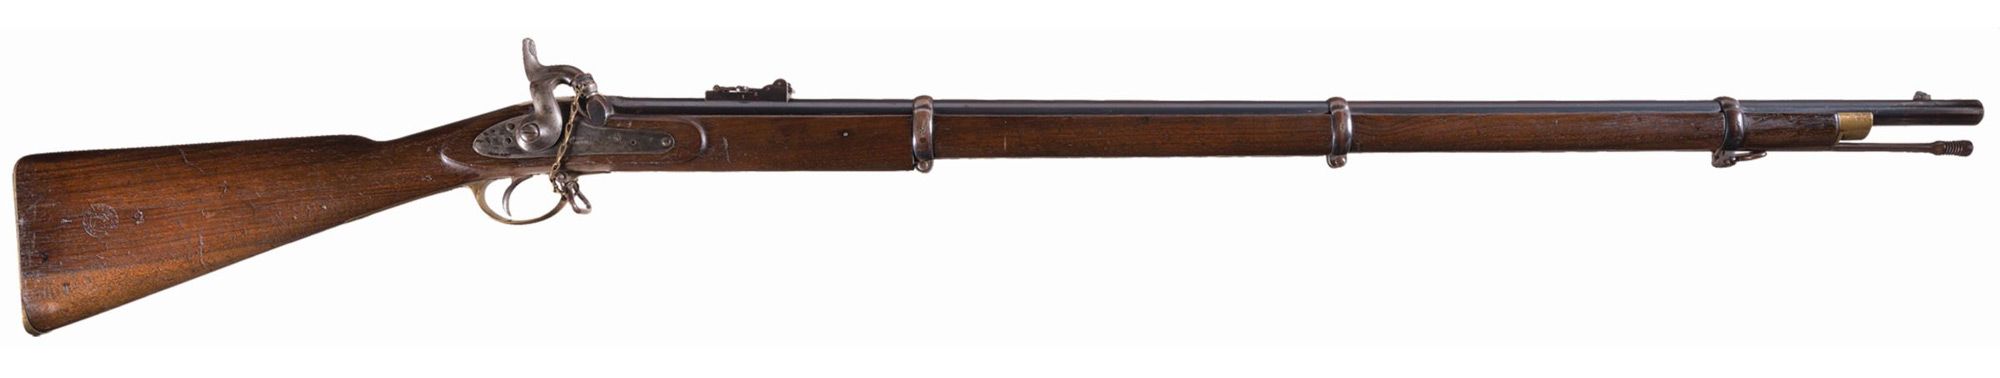 British P1853 rifle